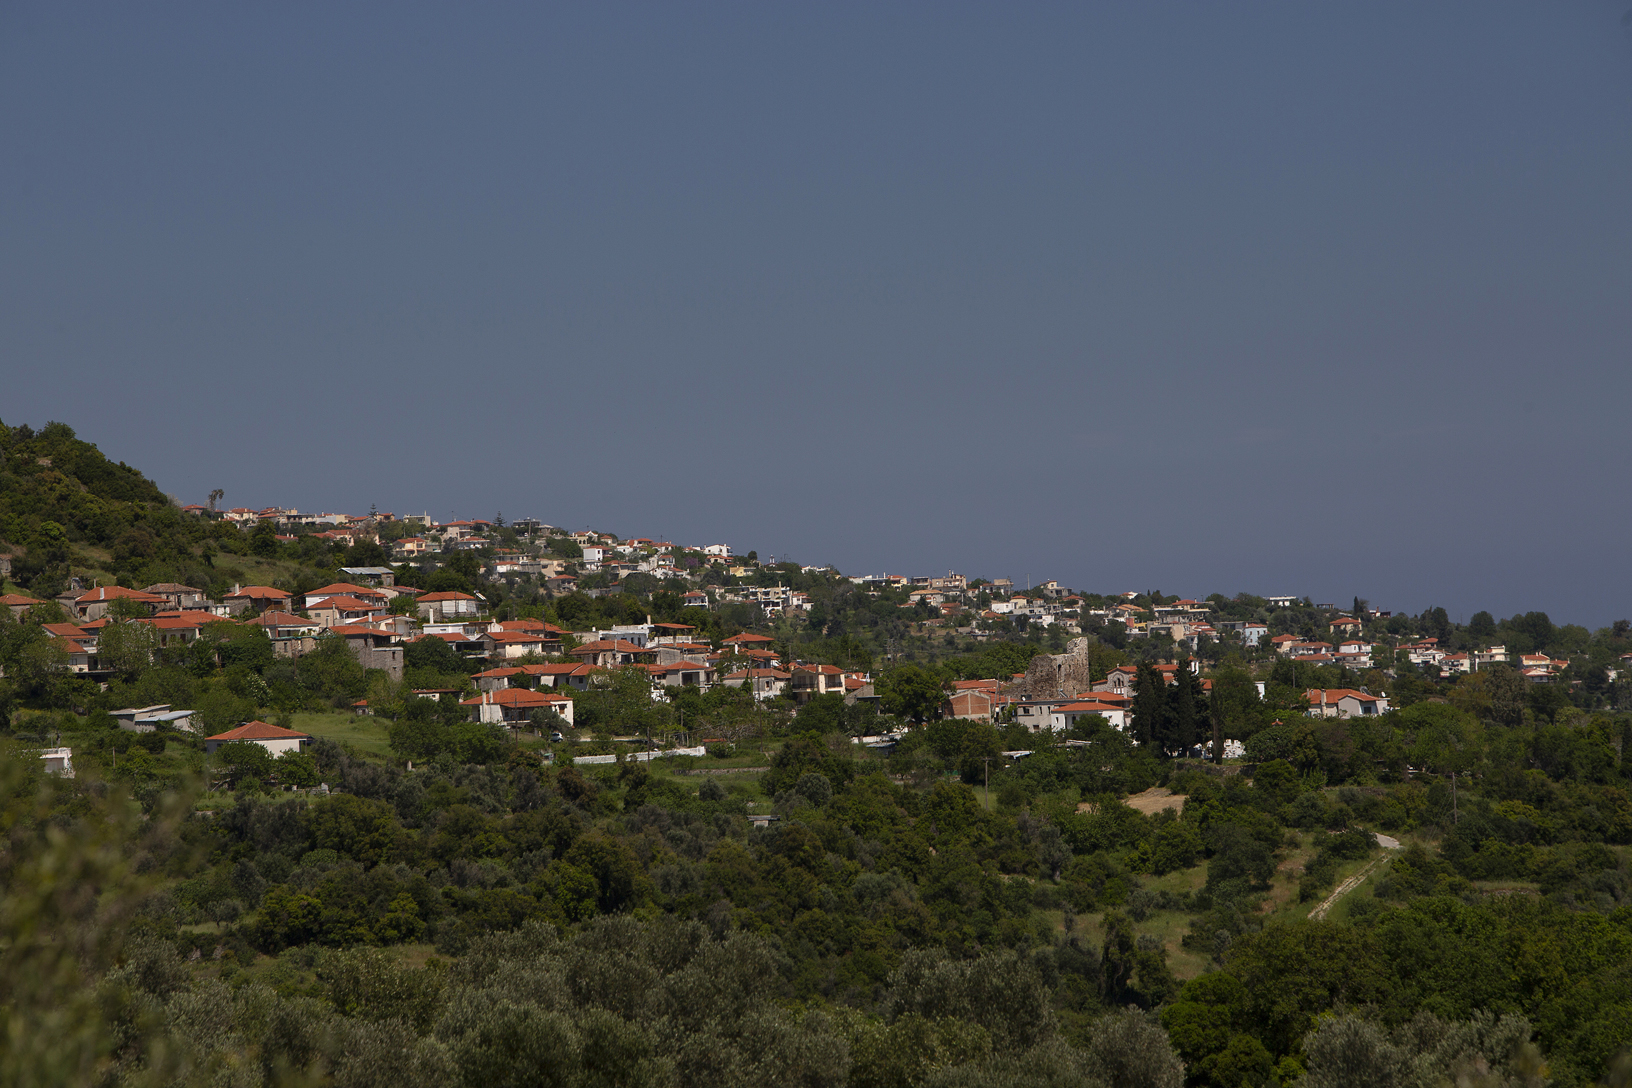 Χωριό Κήποι και πίσω χωριό Οξύλιθος. Φωτογραφία: ©Βασίλης Συκάς, για τον Δήμο Κύμης-Αλιβερίου